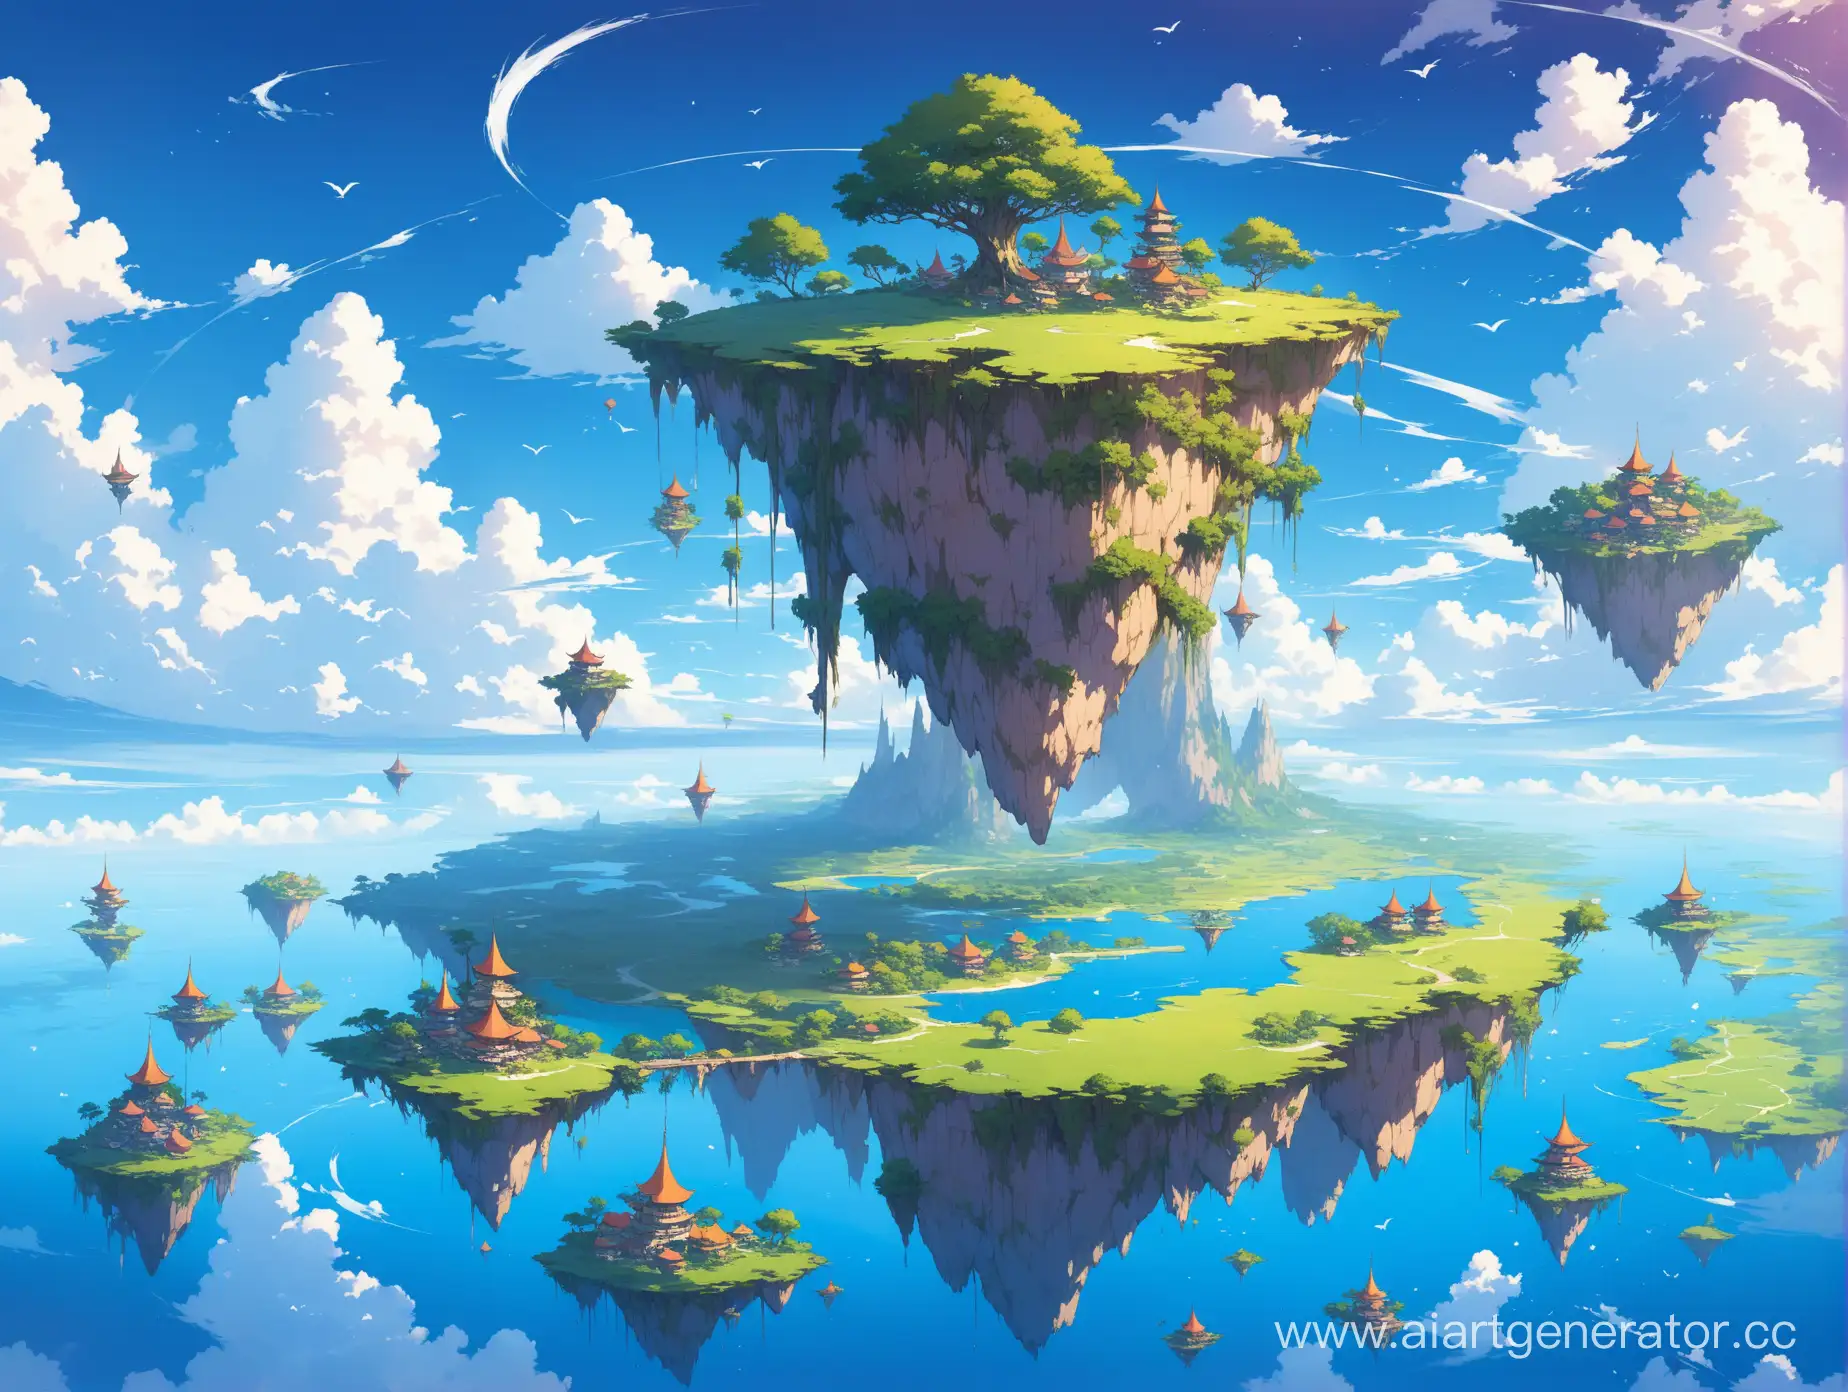 Enchanted-Skies-Floating-Islands-Adventure